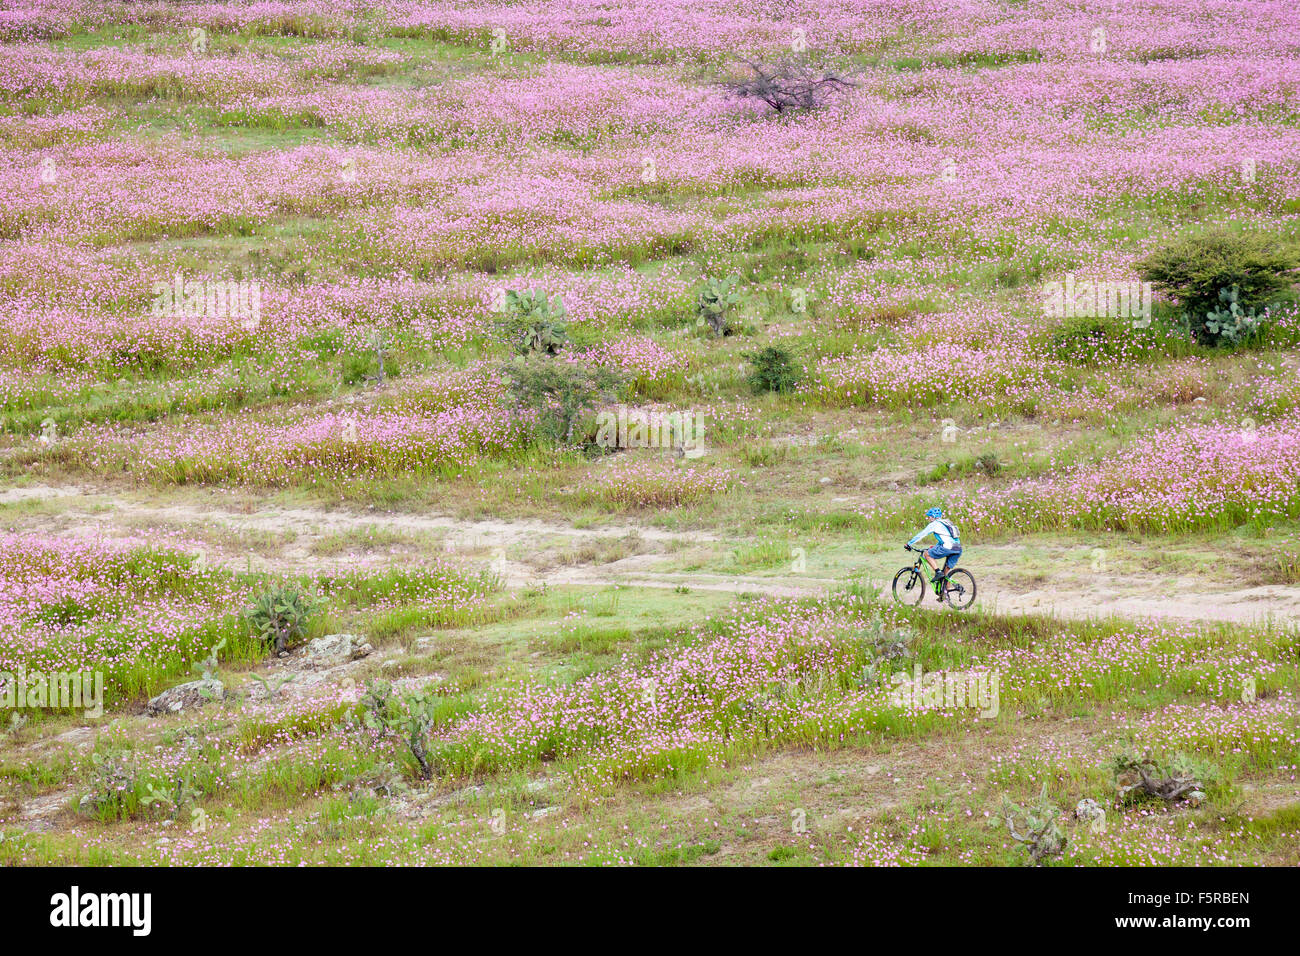 Mountain biker rides through fields of wild cosmos flowers near Morelia, Michoacan, Mexico. Stock Photo